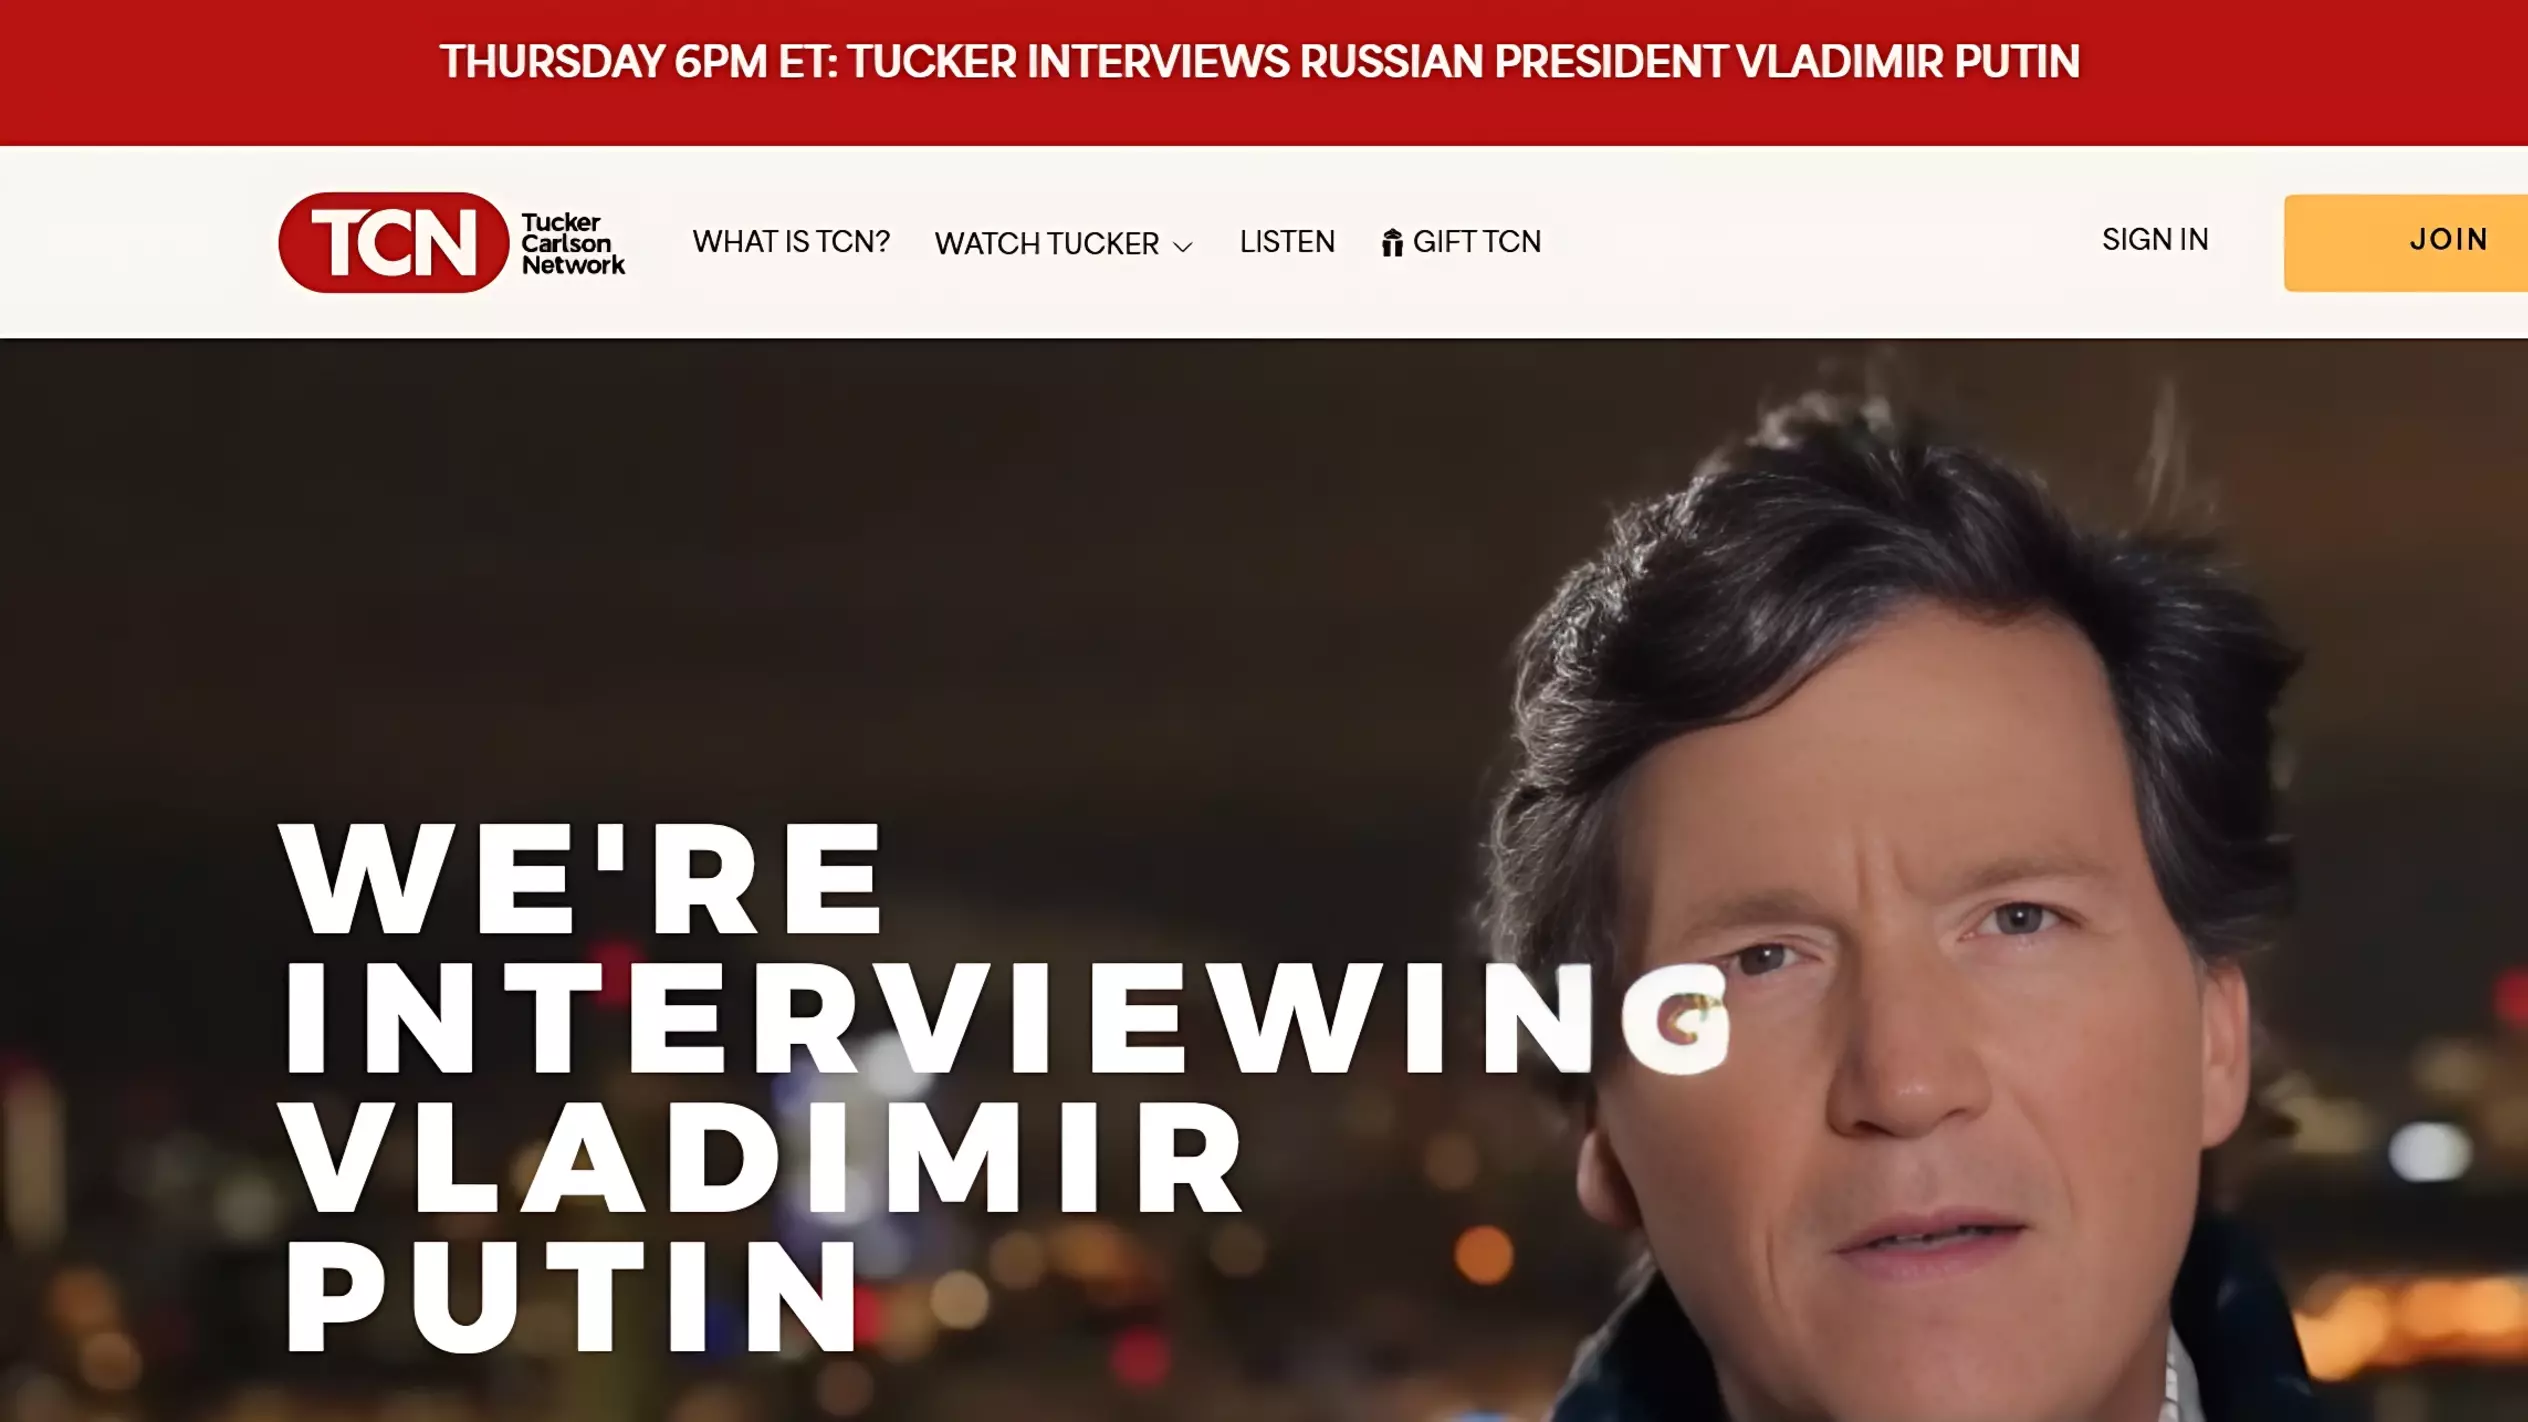 На официальном сайте Такера Карлсона вверху красной плашкой весь день анонсируется выход интервью с Владимиром Путиным